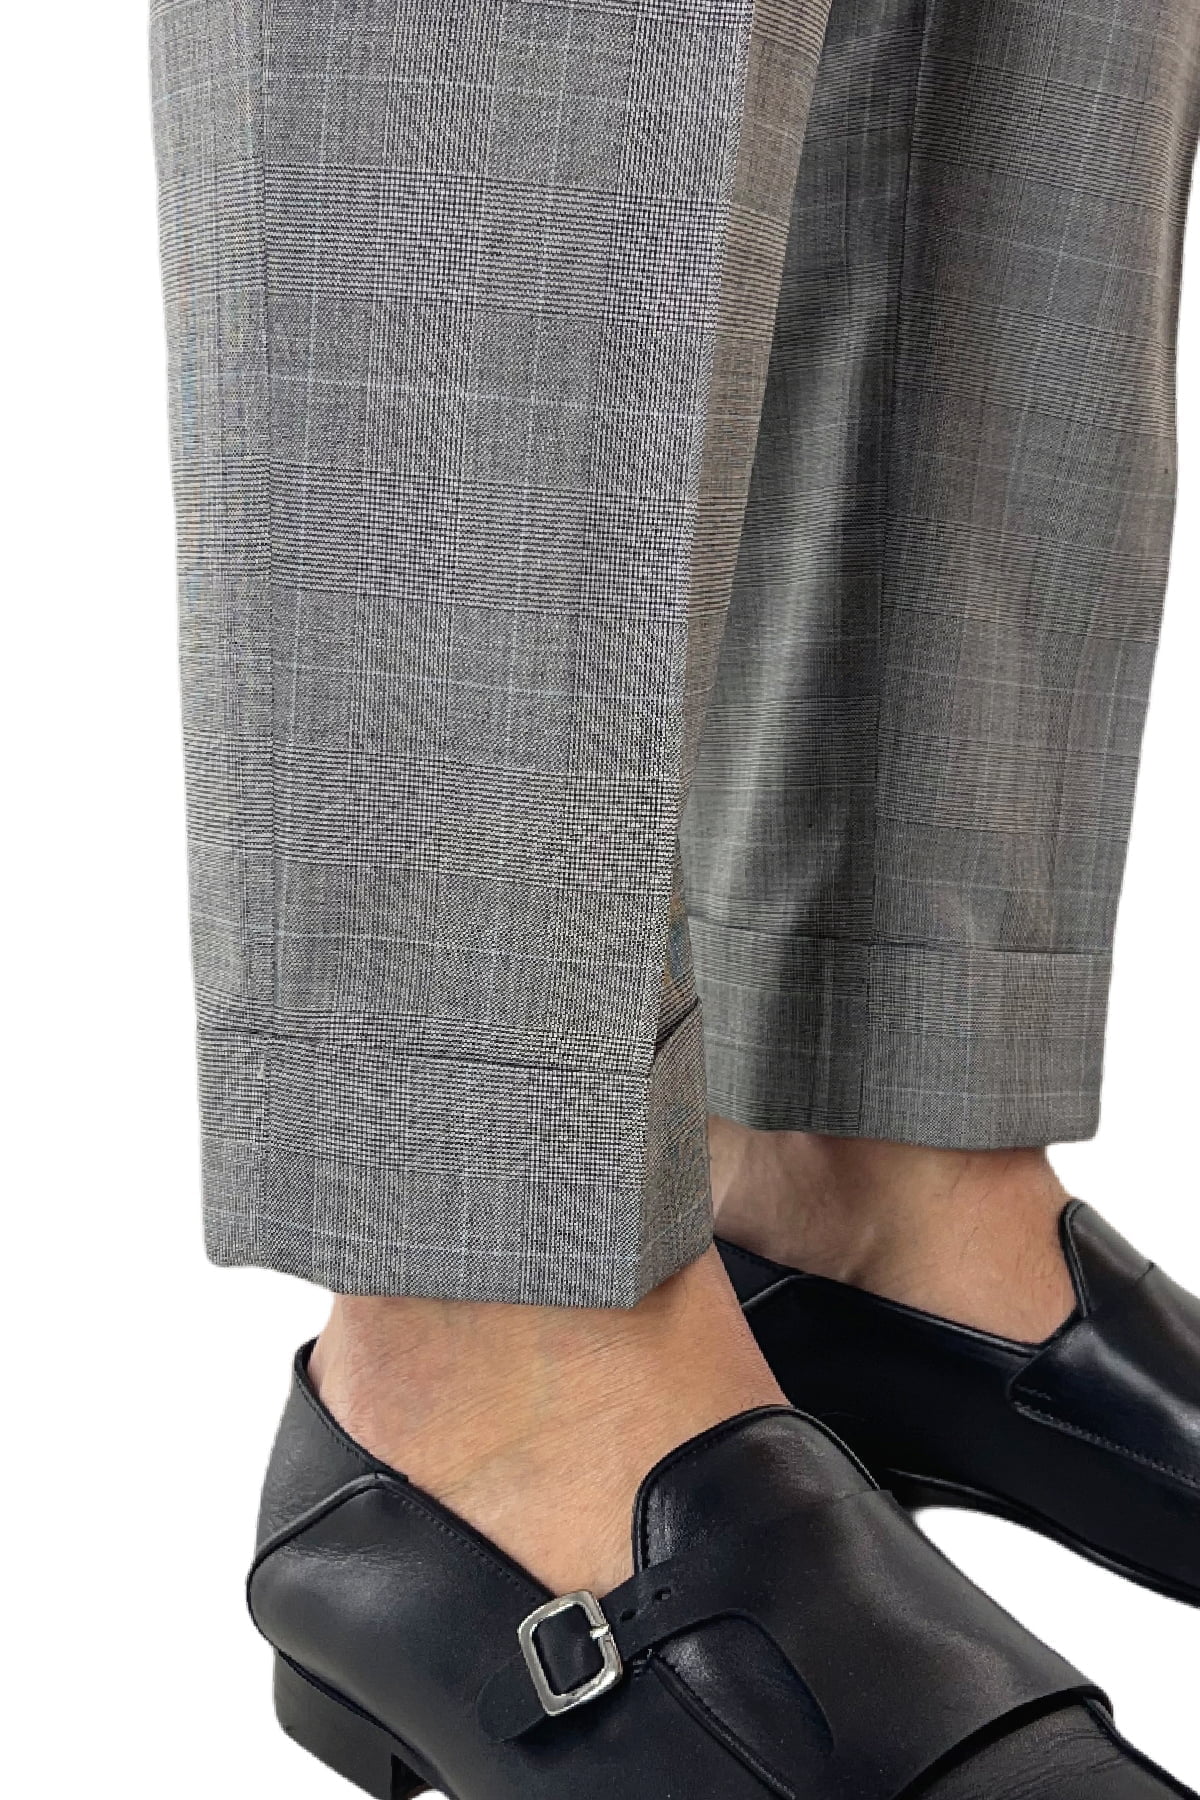 Pantalone uomo grigio fantasia principe di galles in fresco lana 120's vita alta con pinces fibbie laterali e risvolto 4cm